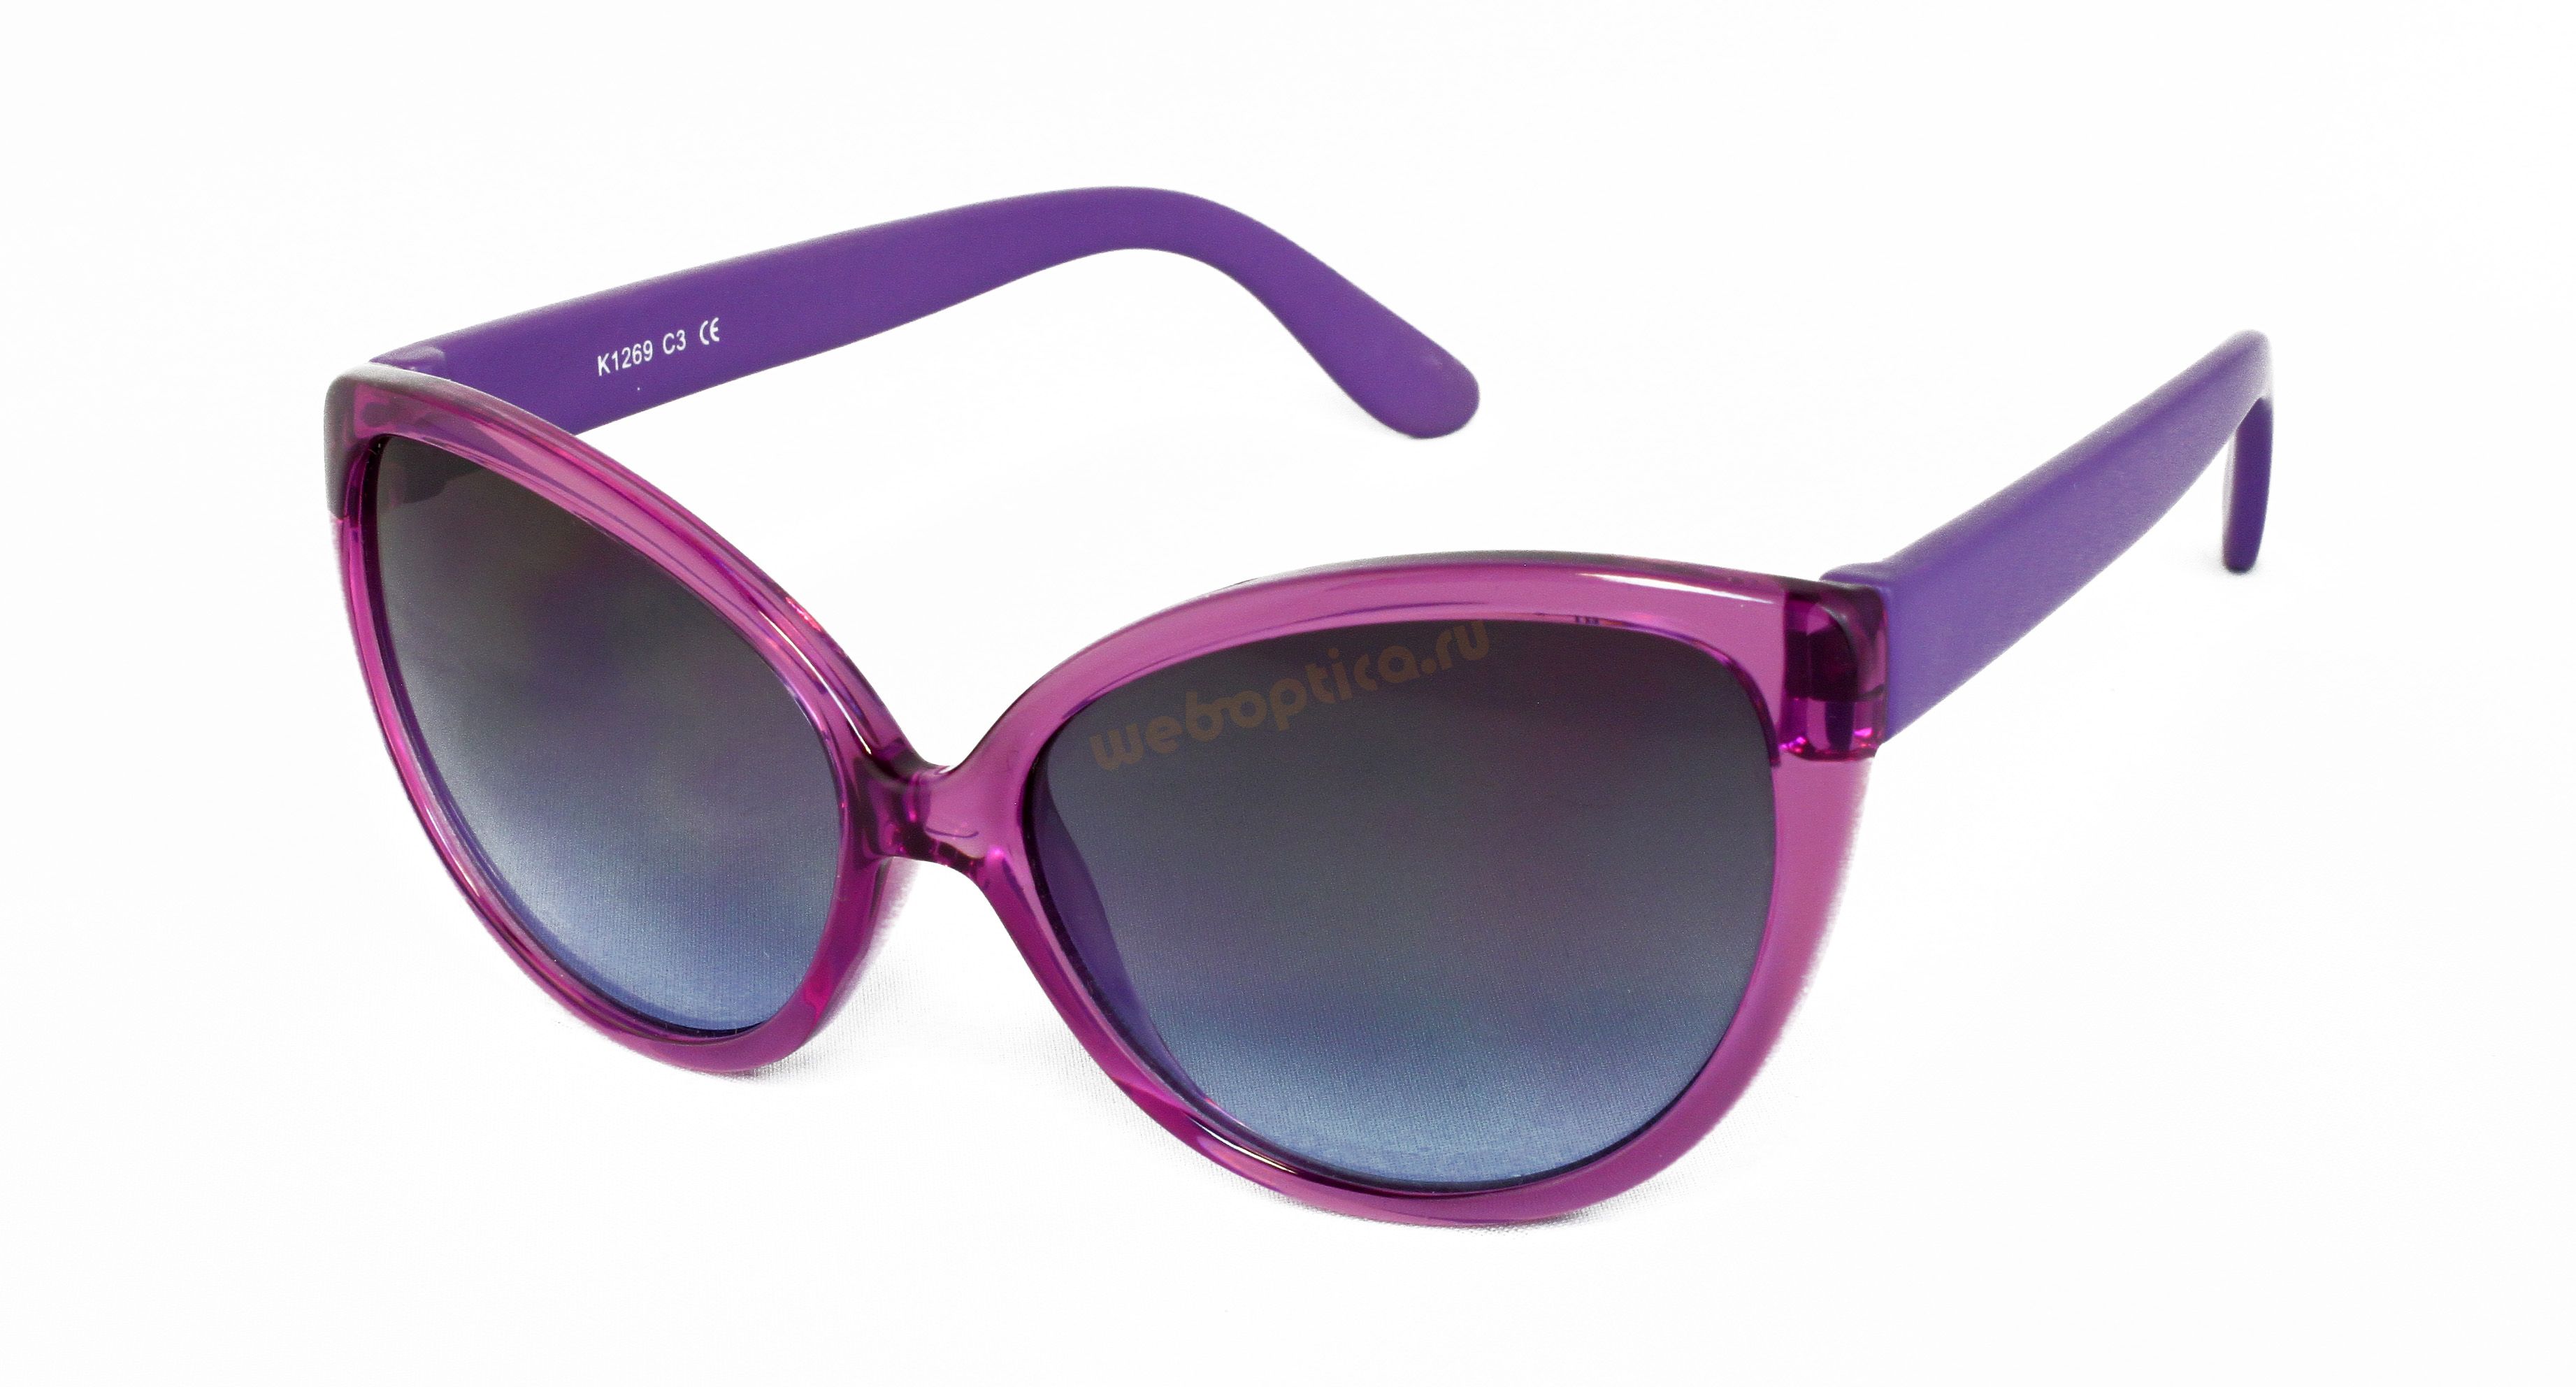 Солнцезащитные очки Sunstar K1269C3 для девочек